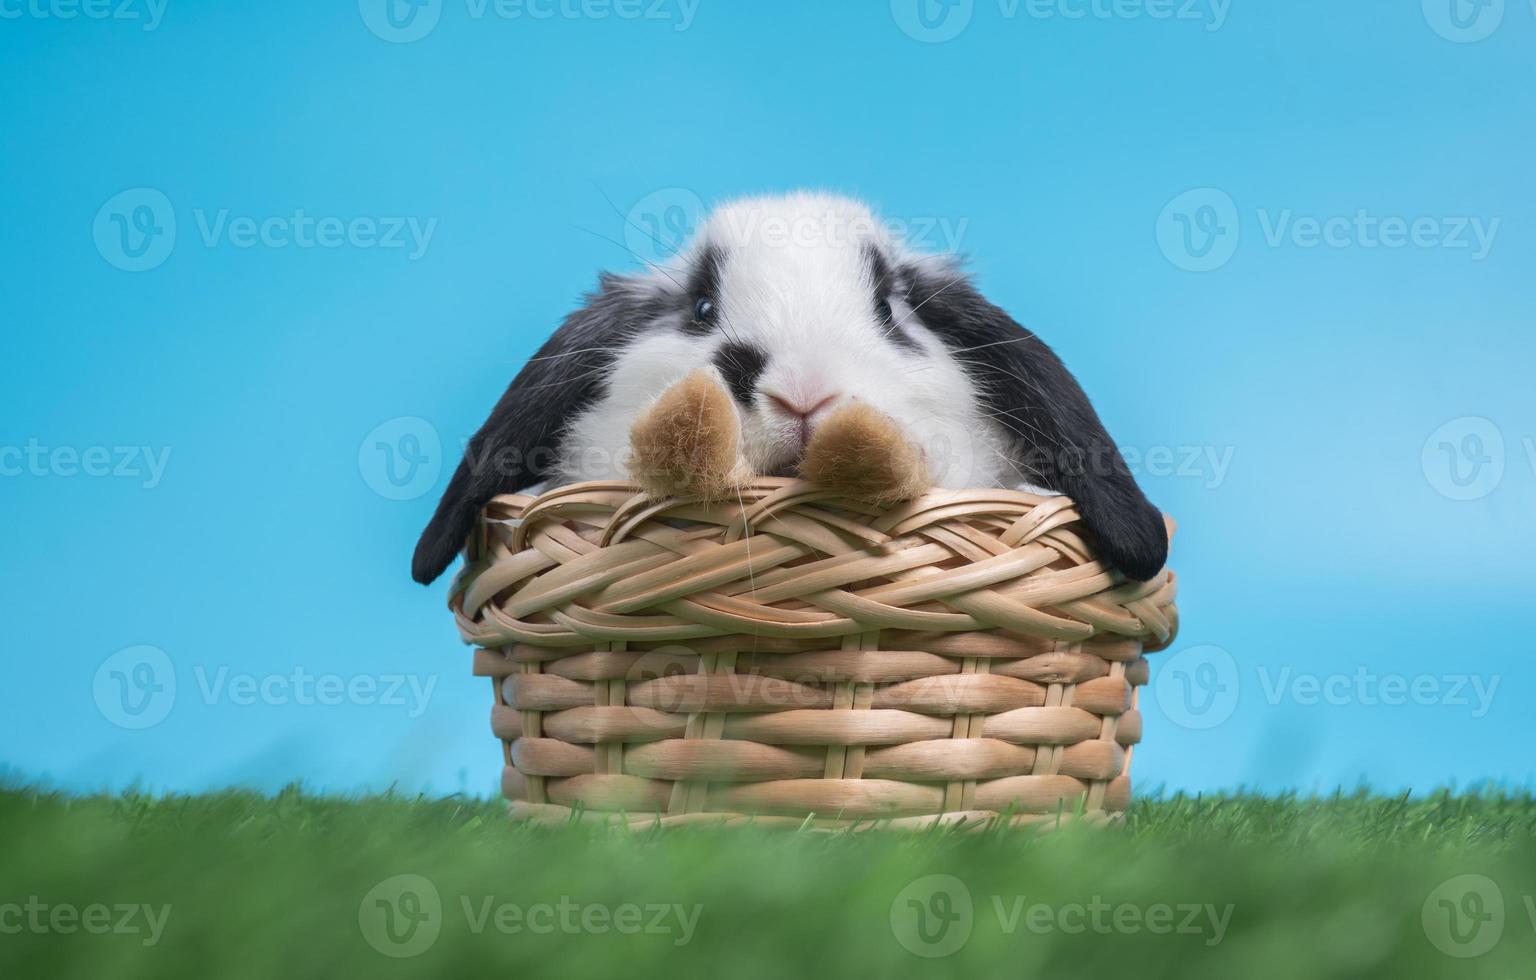 peludo e fofo coelho preto e branco está sentado na cesta na grama verde e fundo azul. conceito de animal de estimação roedor e páscoa. foto